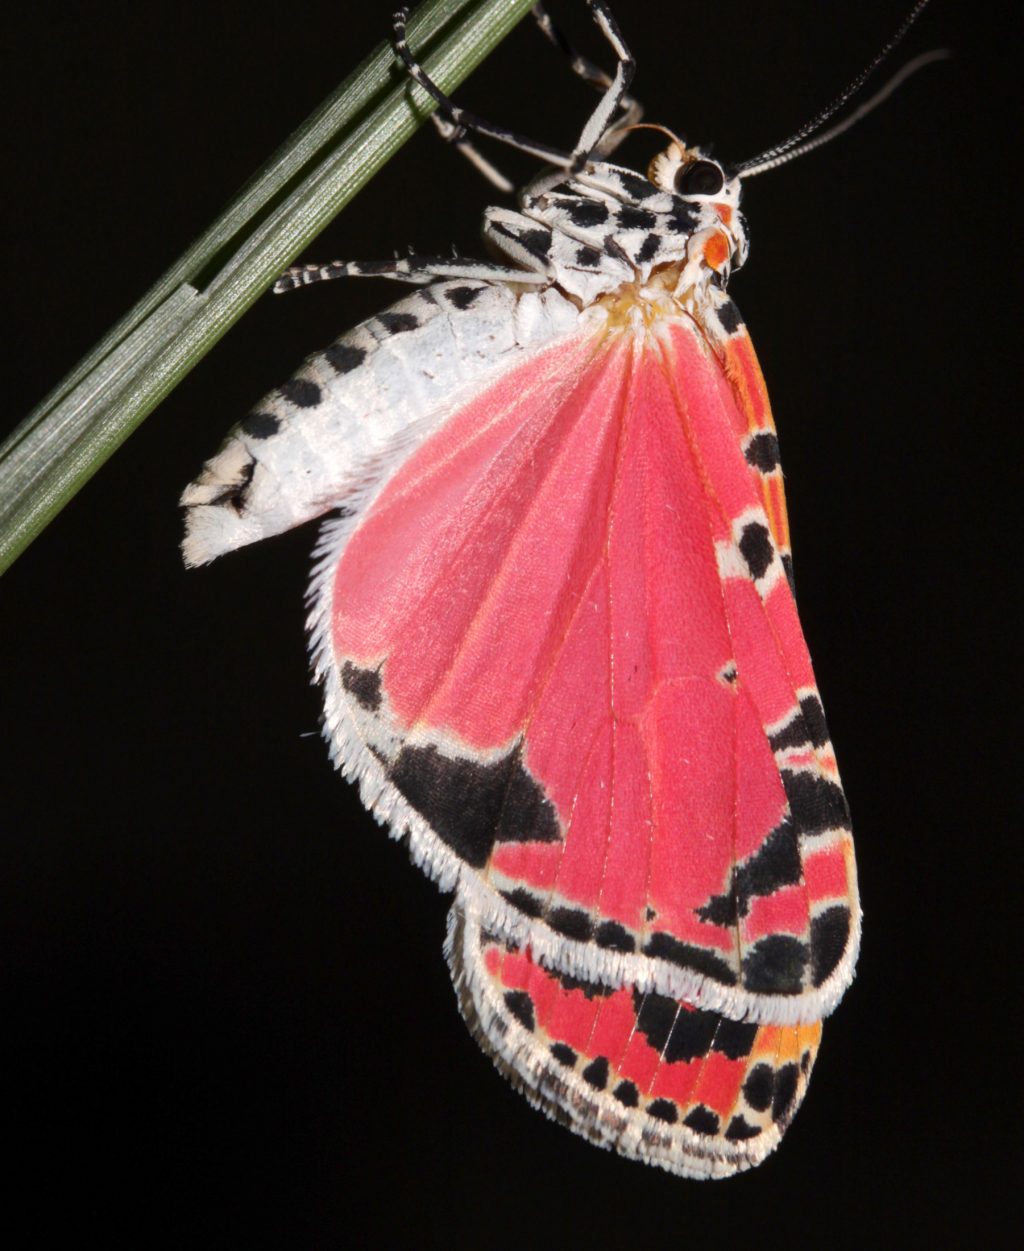 Moth rests on stem or leaf.